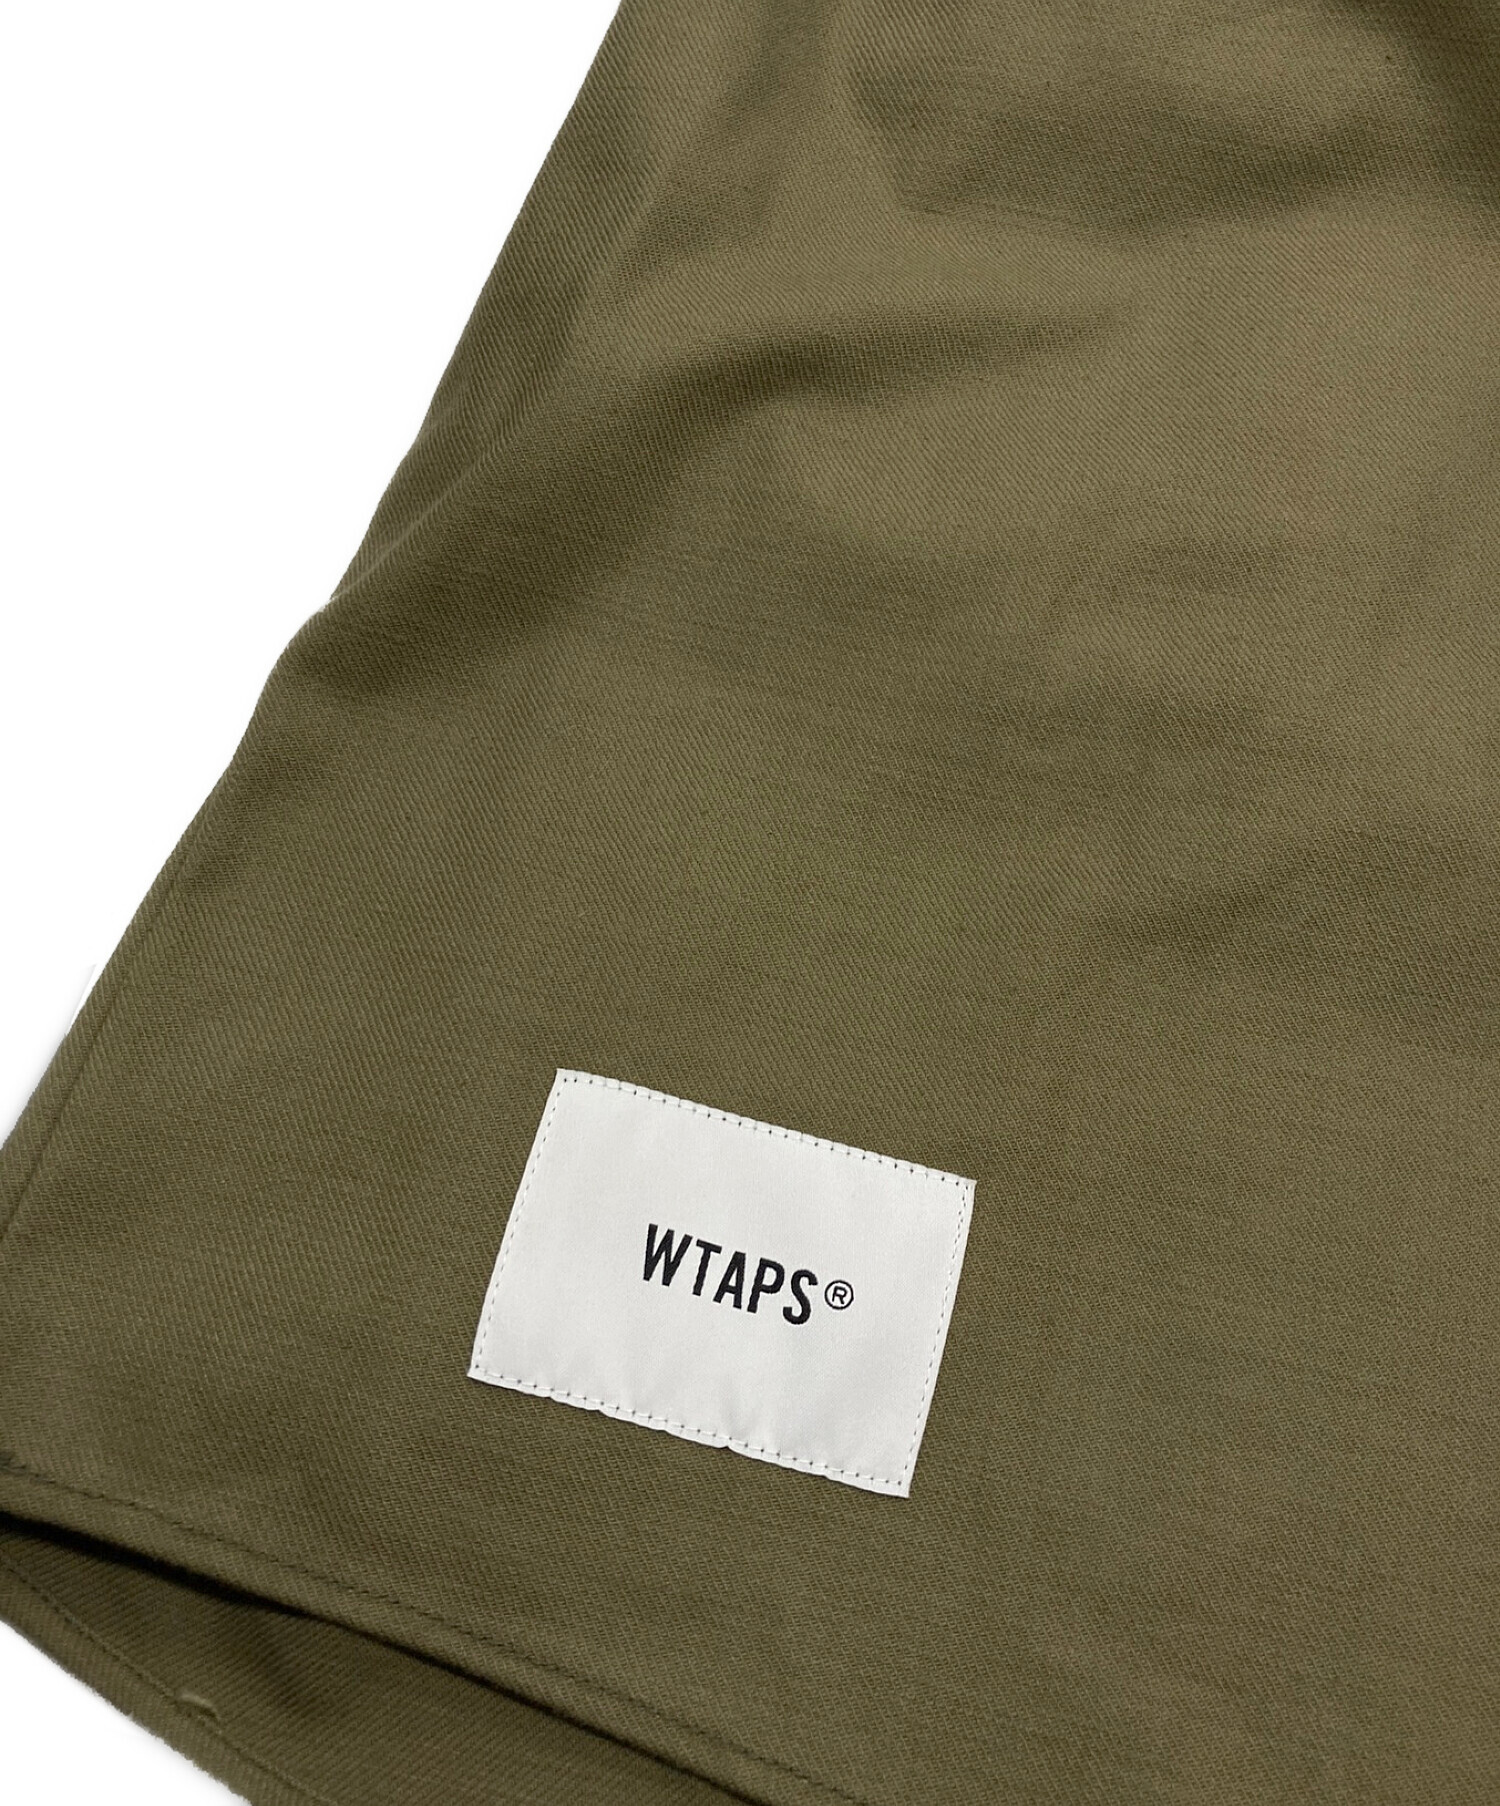 WTAPS (ダブルタップス) FALCONERフーディプルオーバーシャツ オリーブ サイズ:2 未使用品